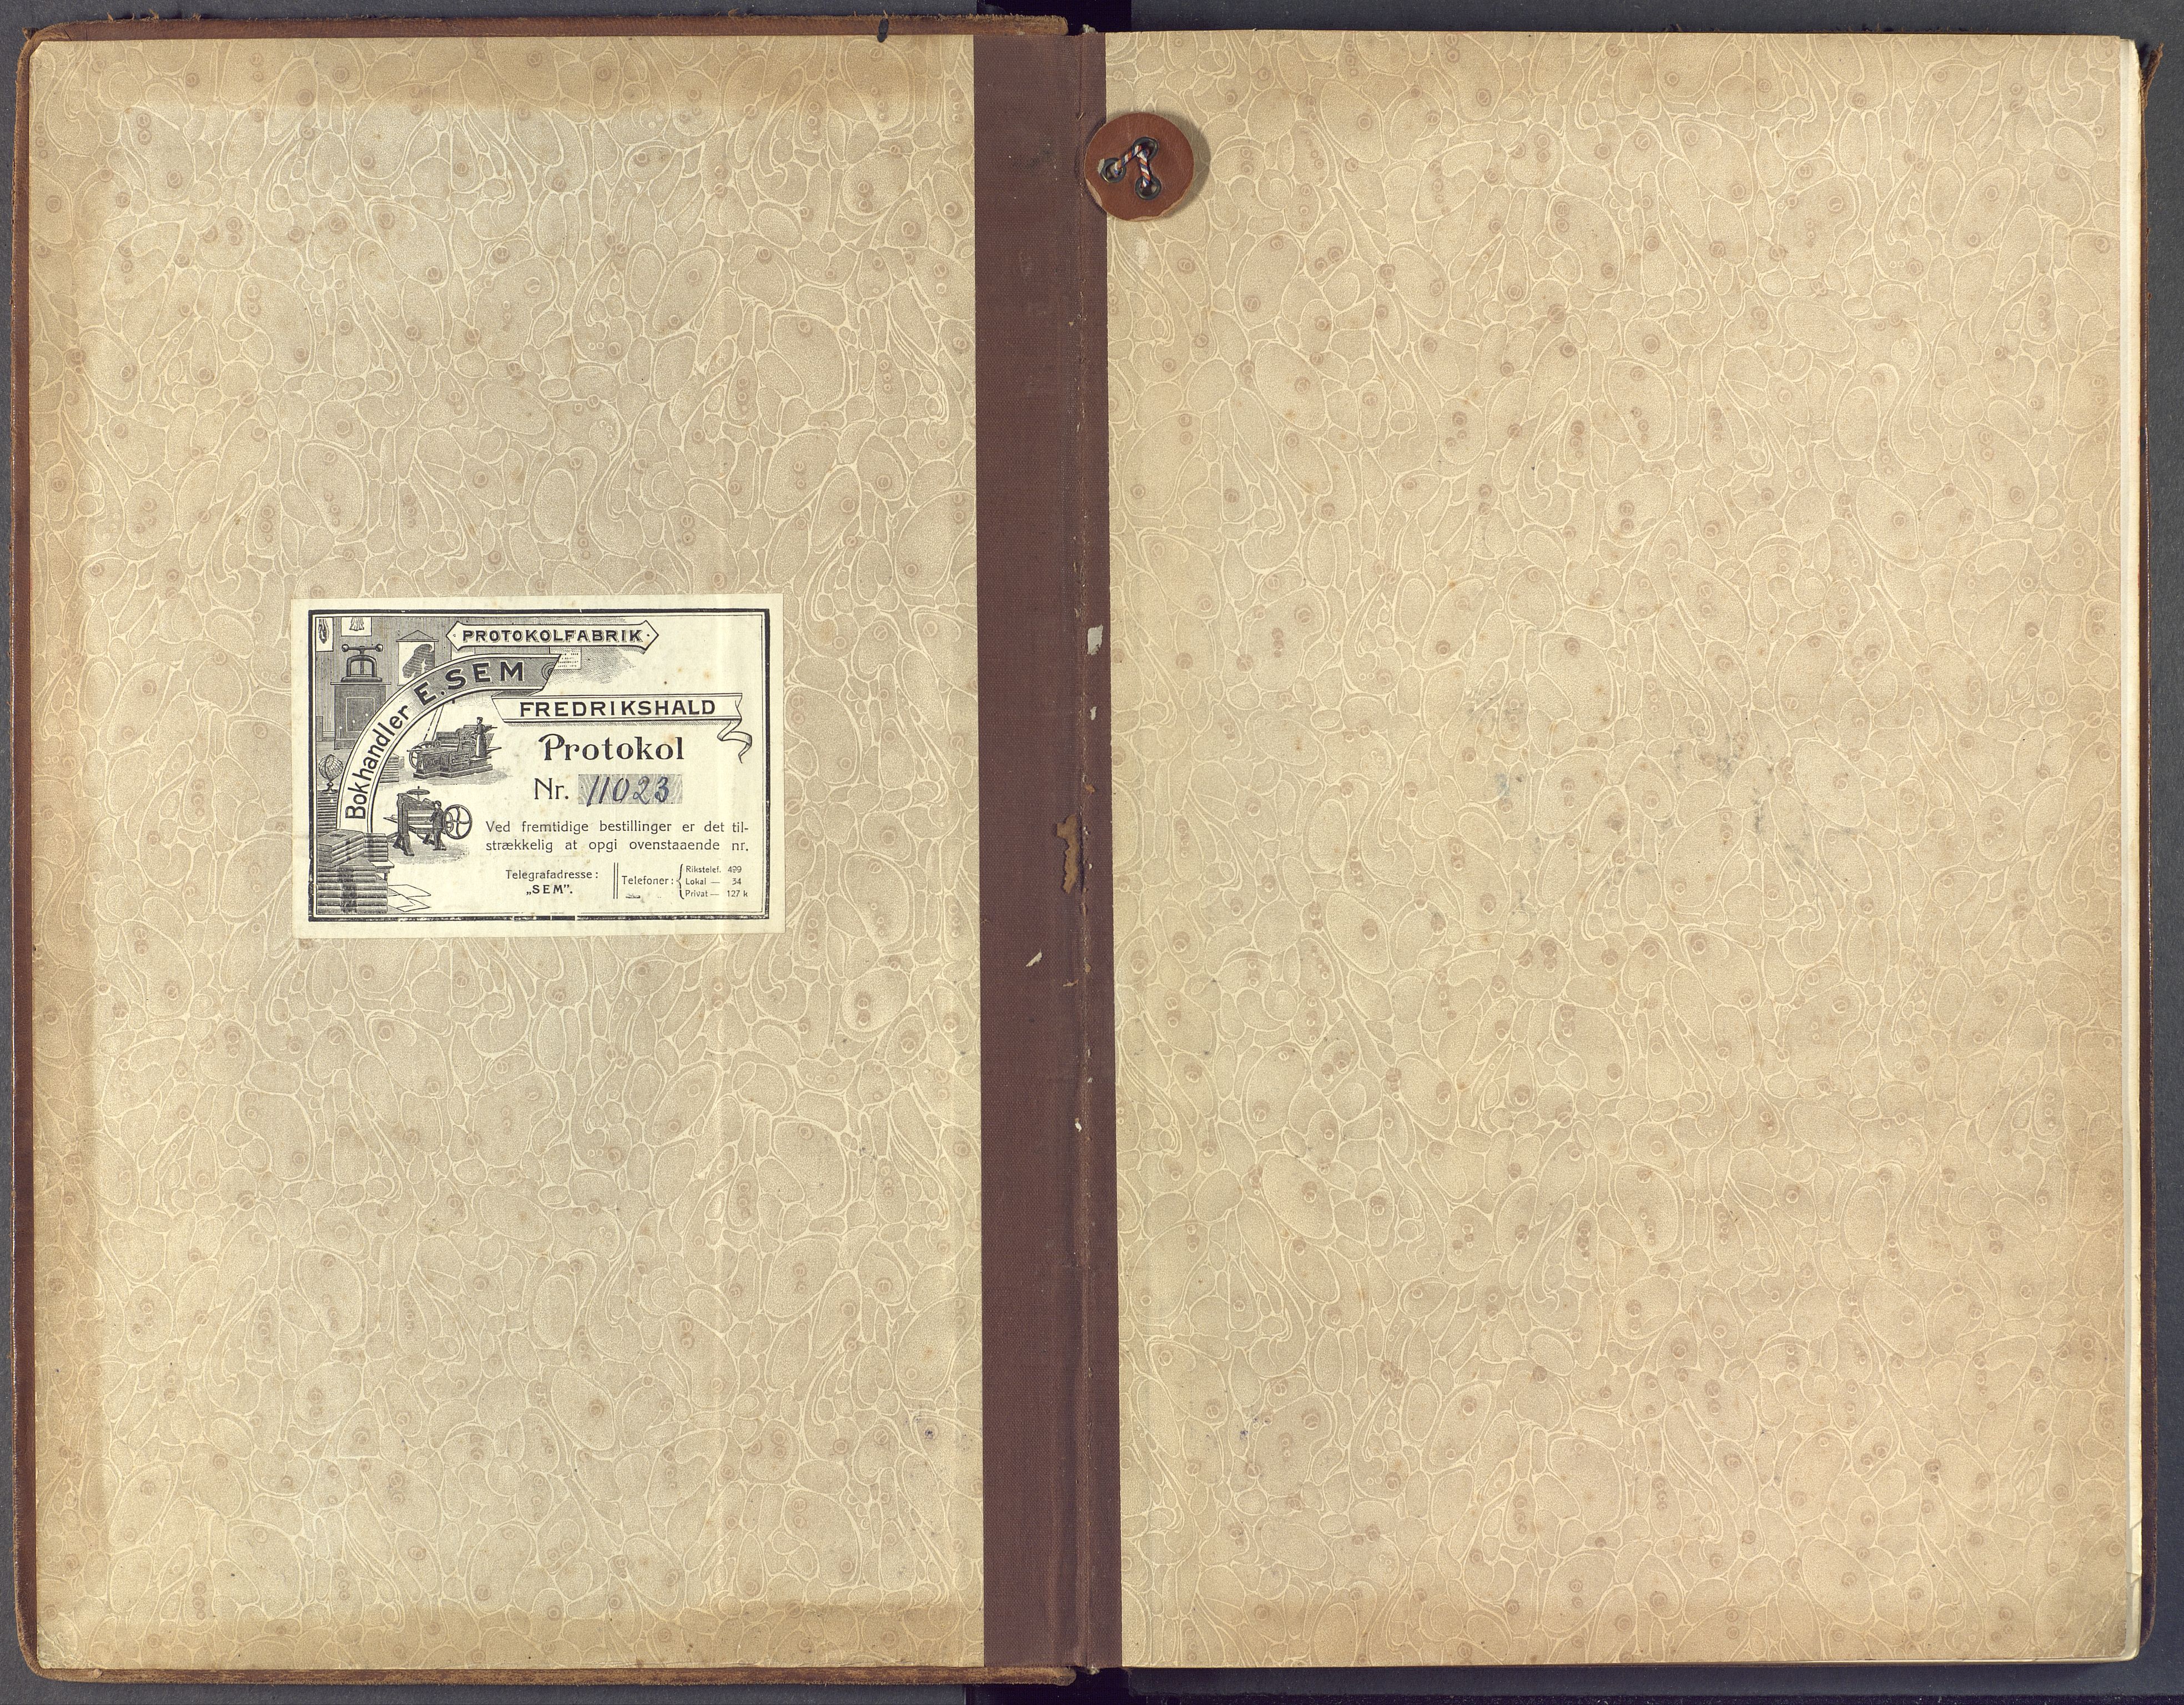 Horten kirkebøker, SAKO/A-348/F/Fa/L0008: Ministerialbok nr. 8, 1913-1924